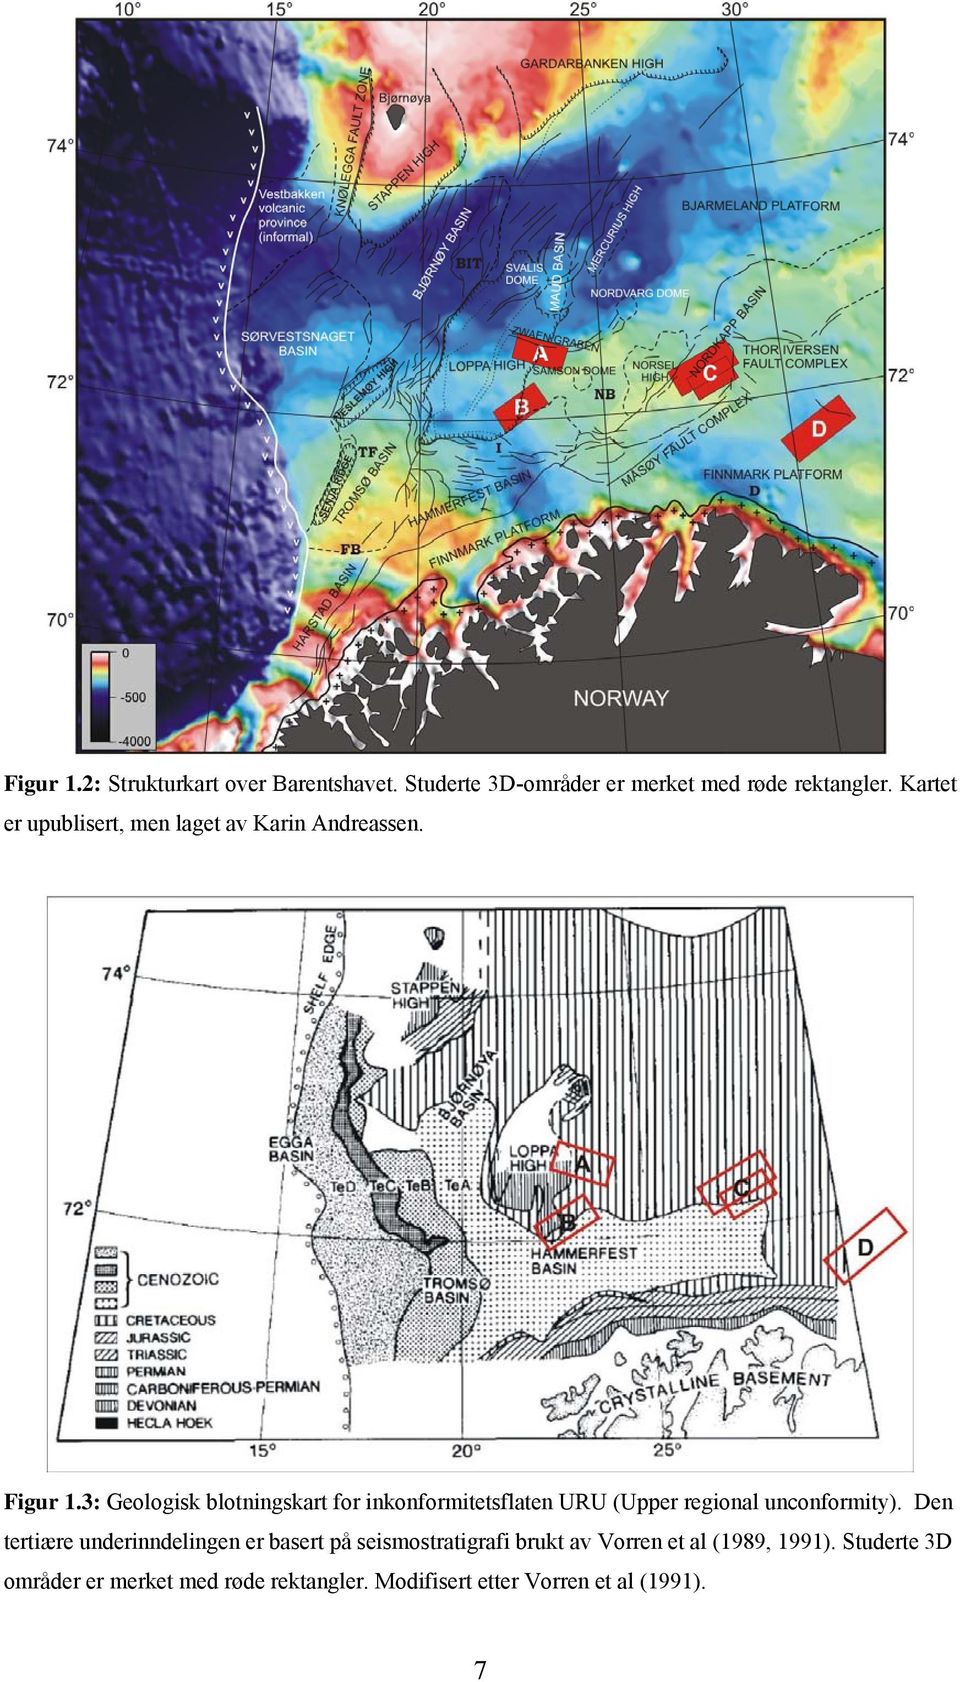 3: Geologisk blotningskart for inkonformitetsflaten URU (Upper regional unconformity).